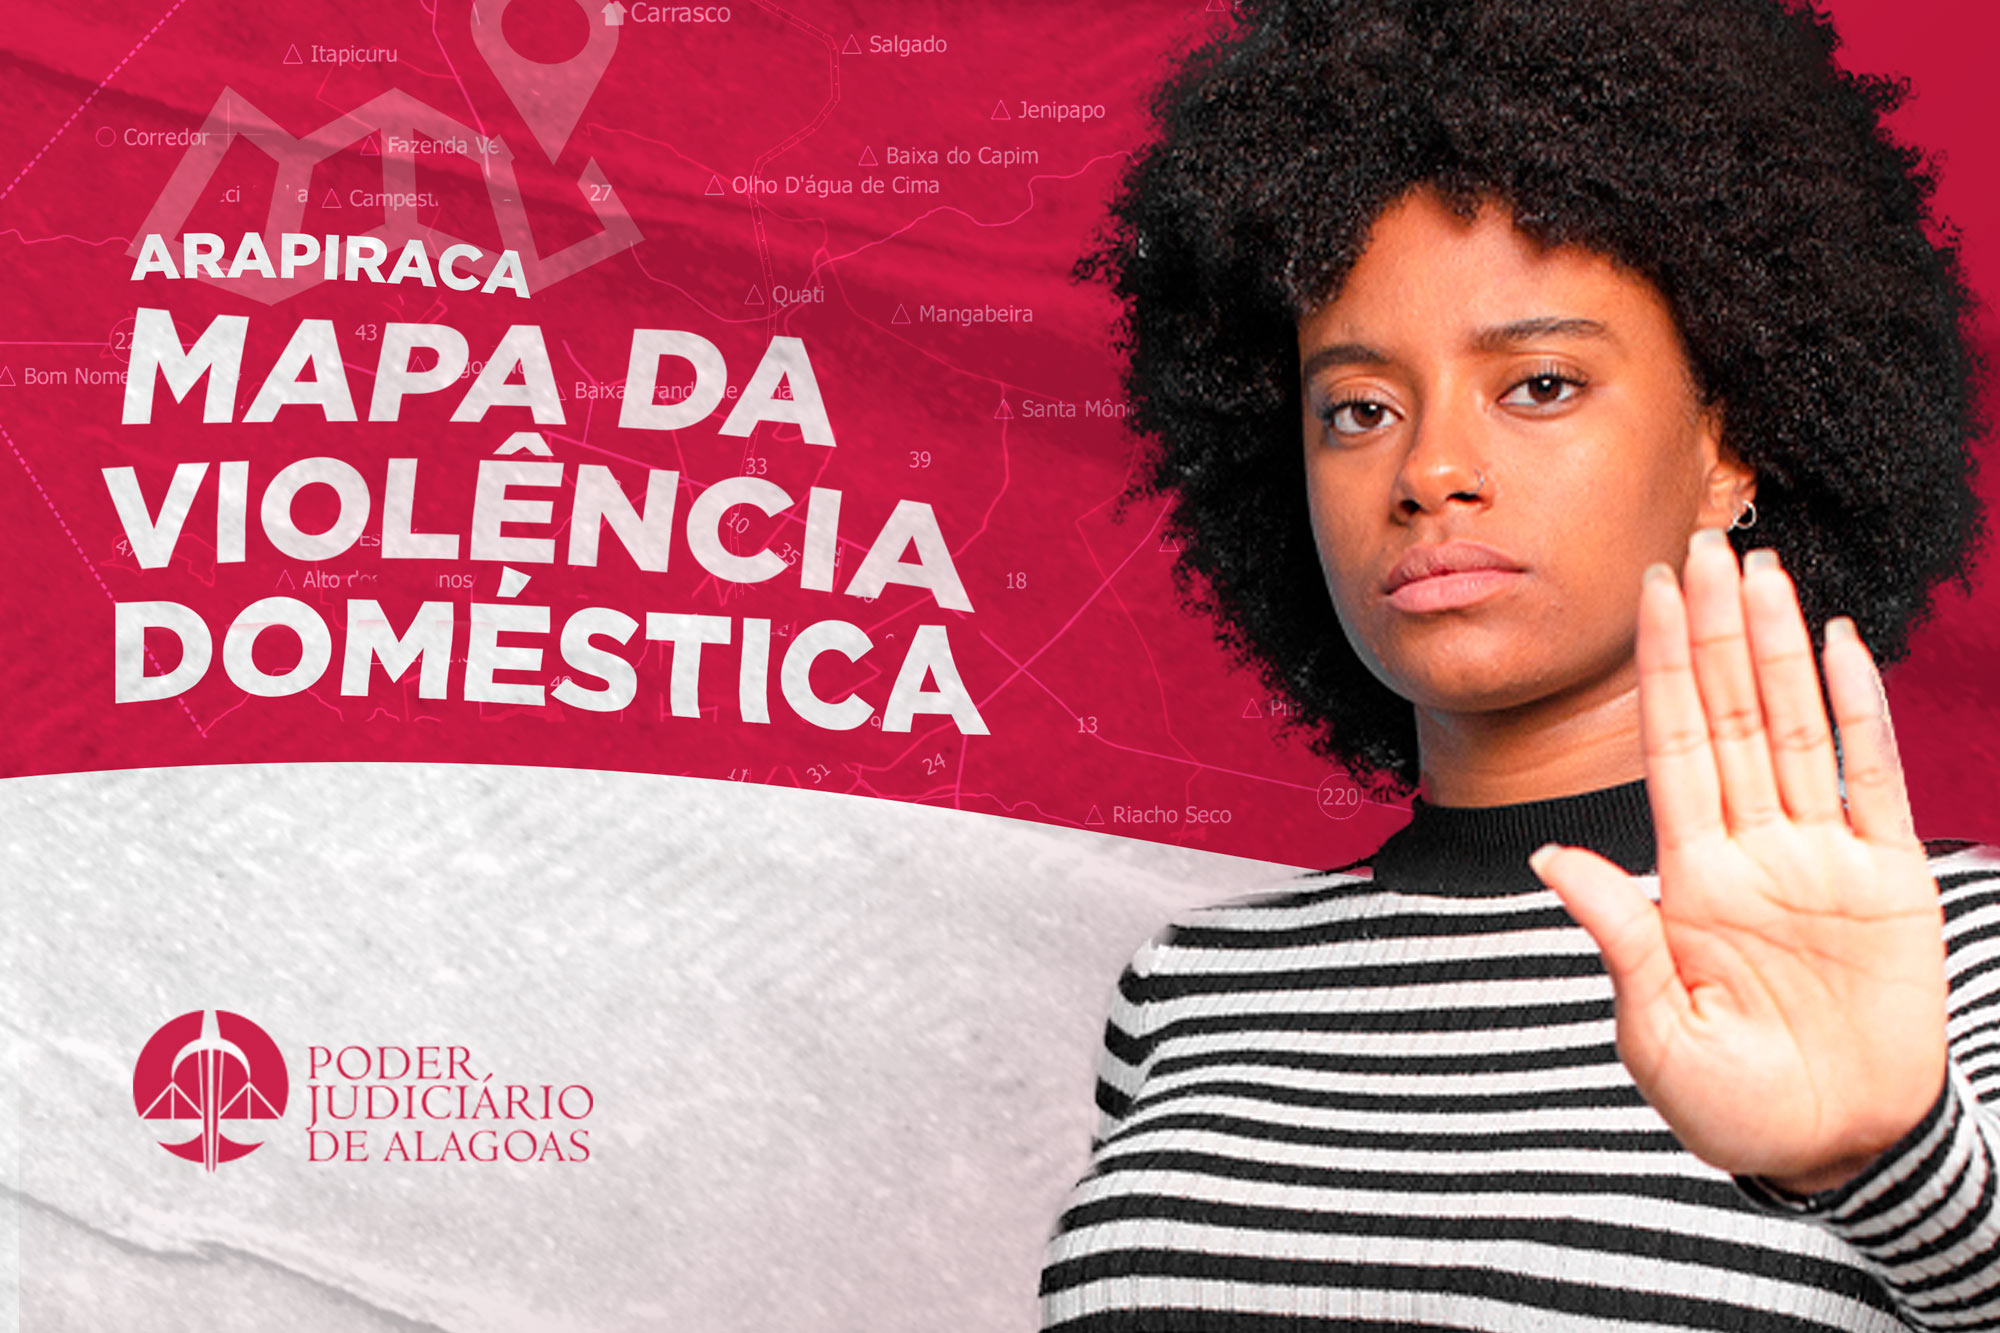 Você está visualizando atualmente 73% dos agressores contra mulheres em Arapiraca (AL) são ex-companheiros